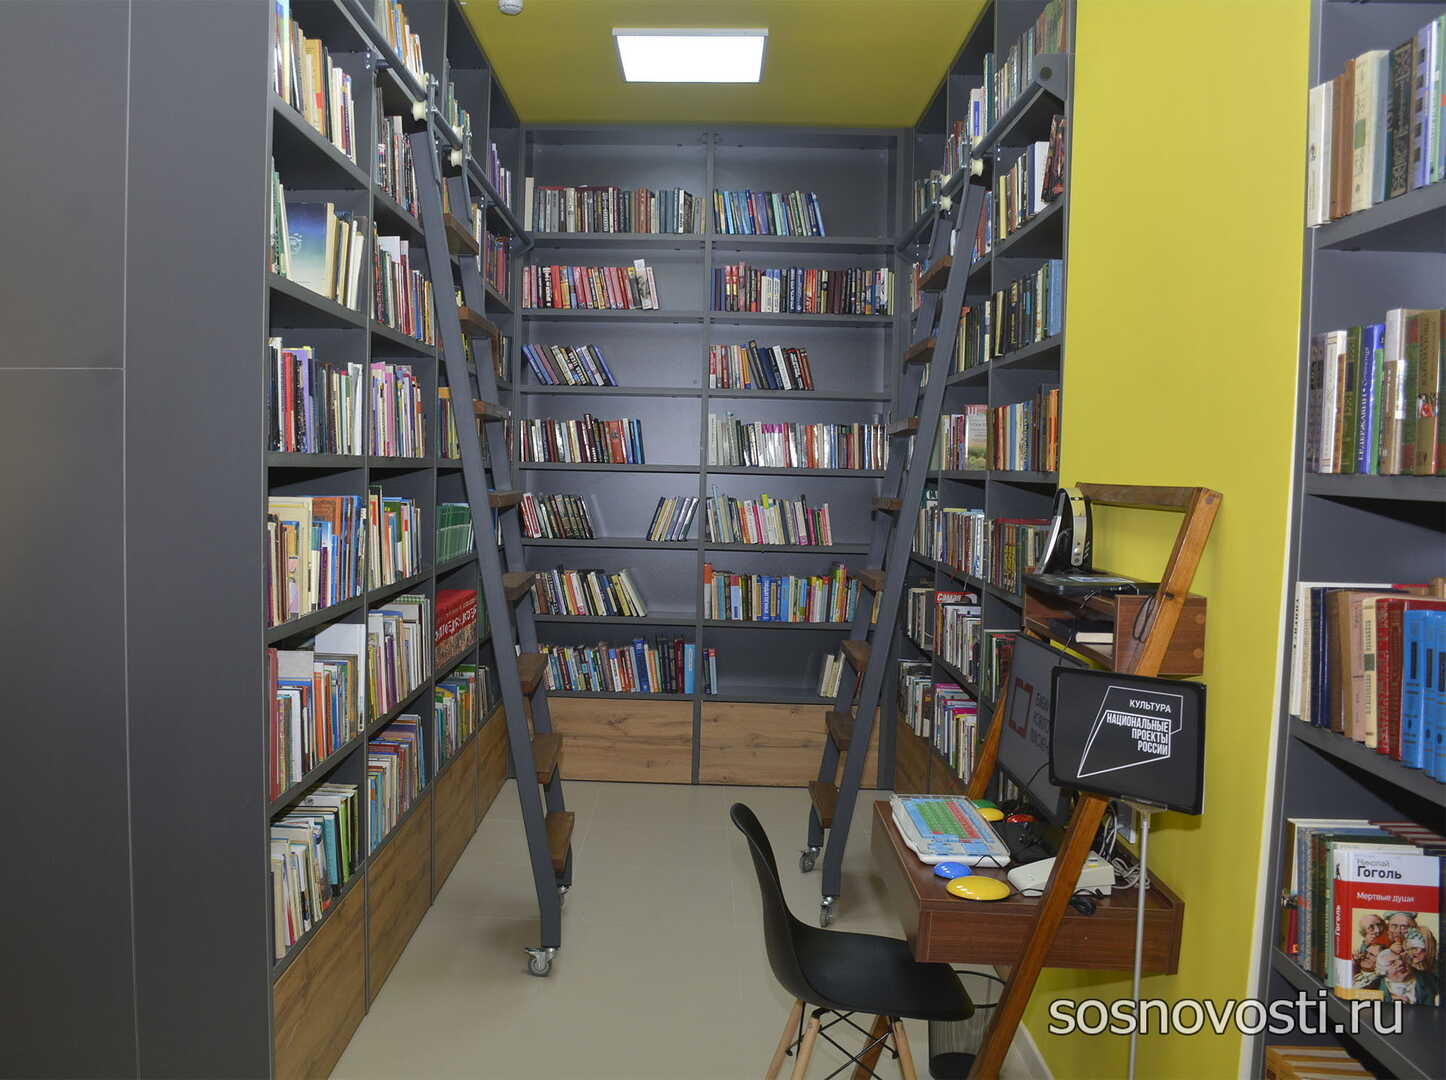 Сейчас эта библиотека недоступна в family. Дети у книжных полок. Открытие модельной библиотеки Сосновский район.